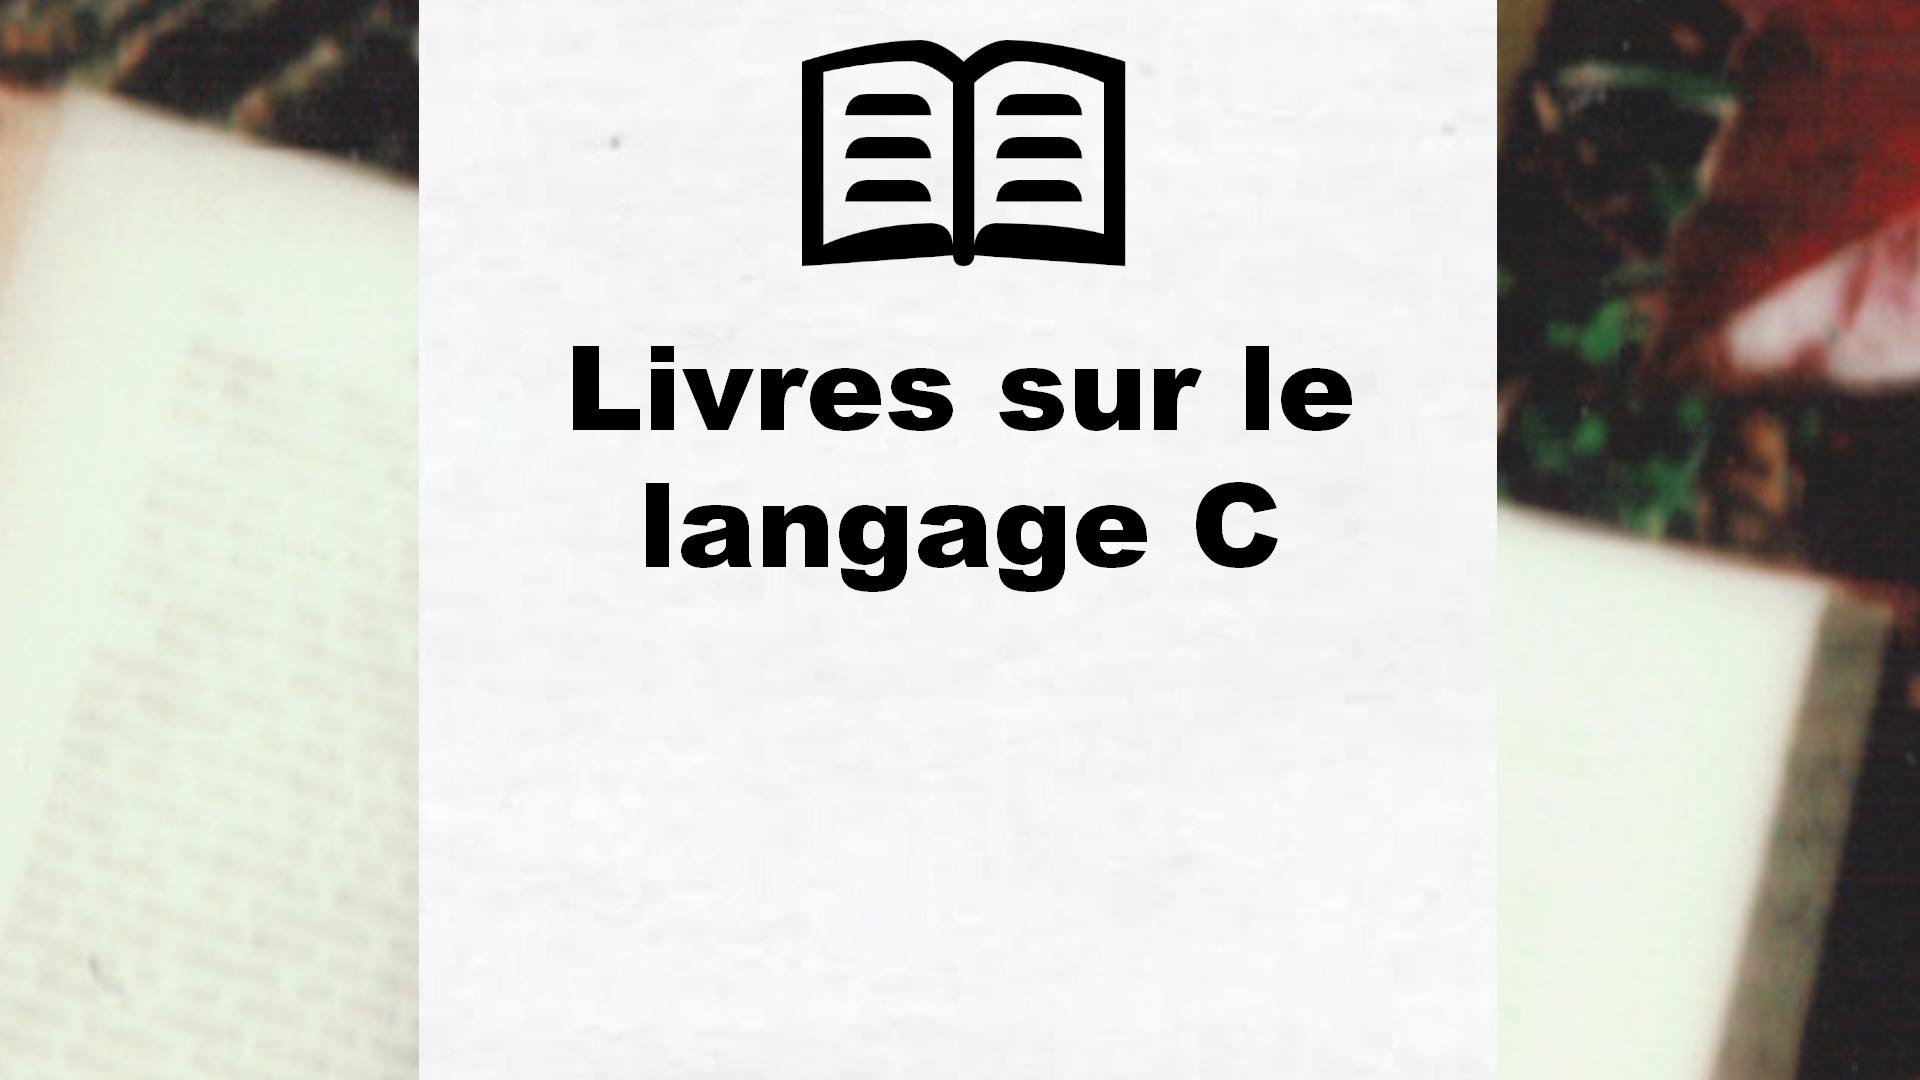 Livres sur le langage C